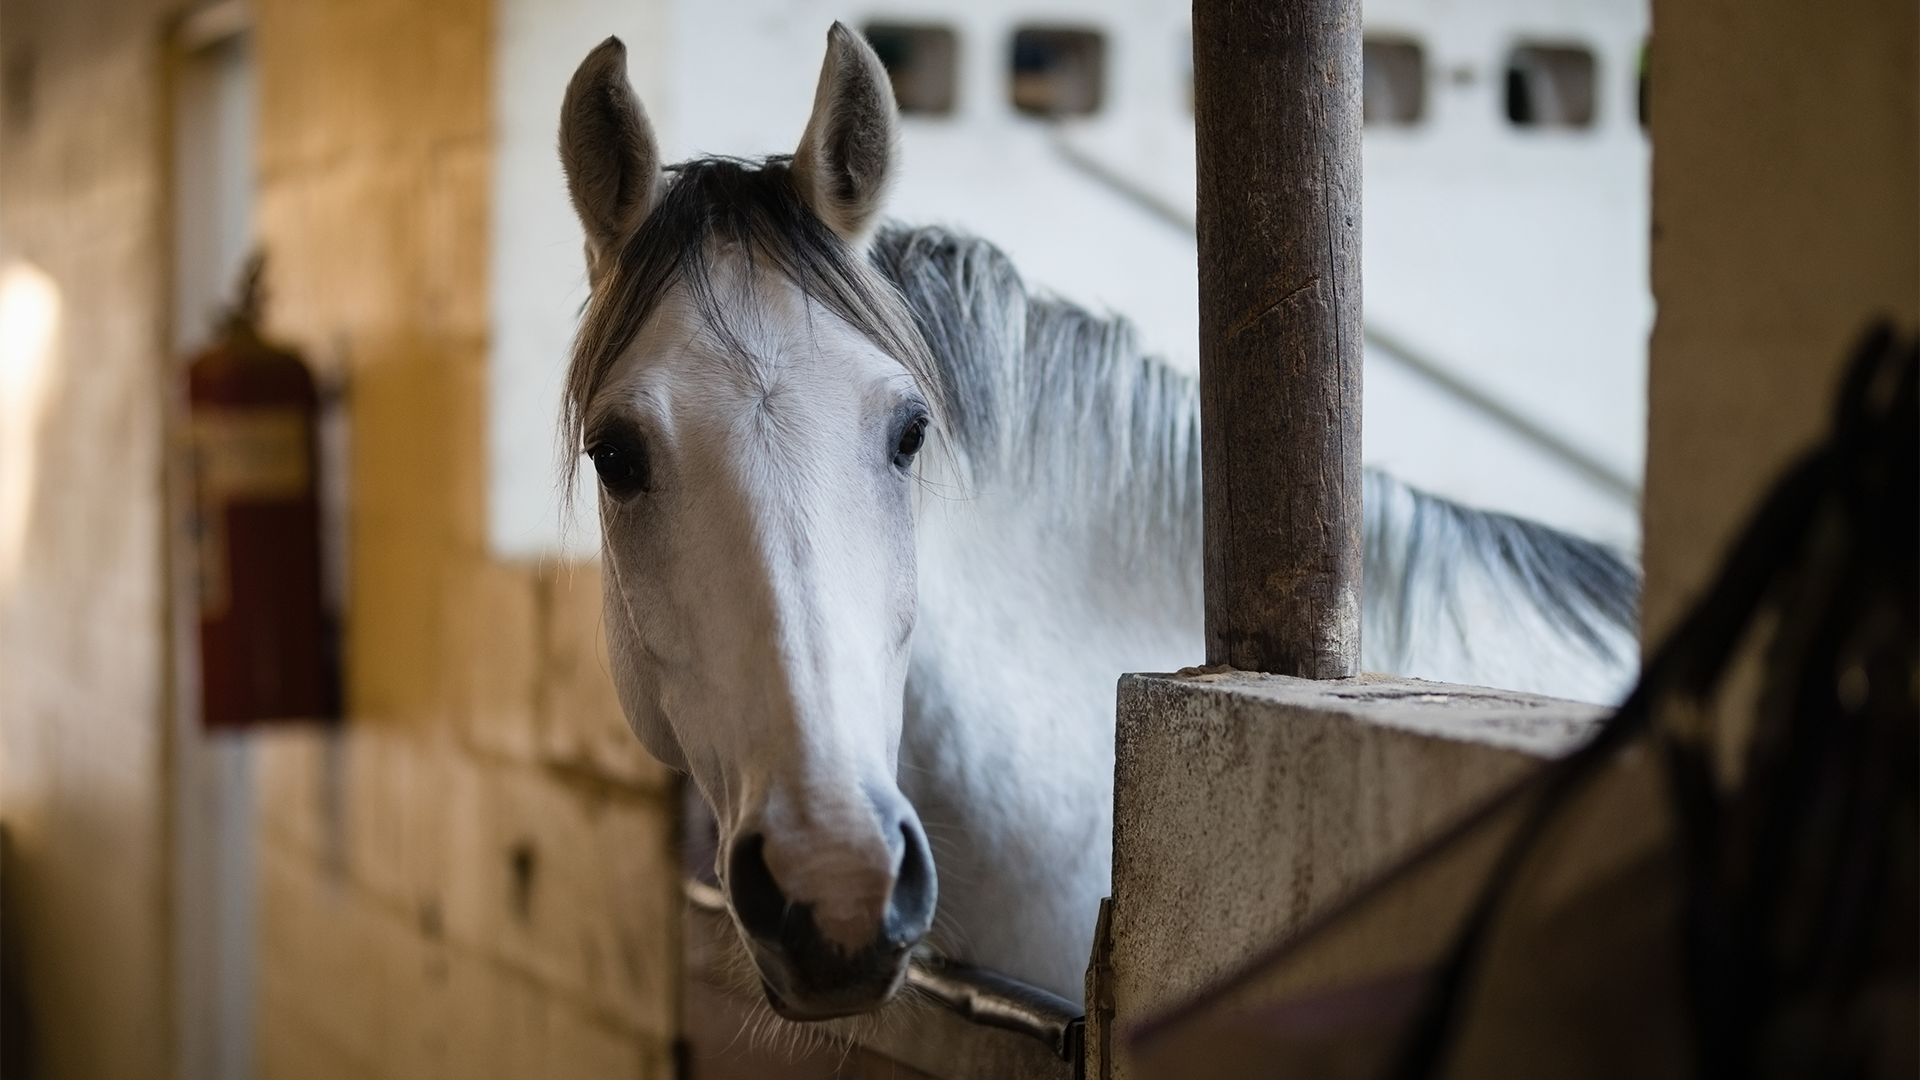 La Société pour la prévention de la cruauté envers les animaux (SPCA) de Montréal dénonce l'exportation de chevaux vivants vers le Japon à des fins de consommation humaine, une pratique qui devait être interdite par le gouvernement fédéral.